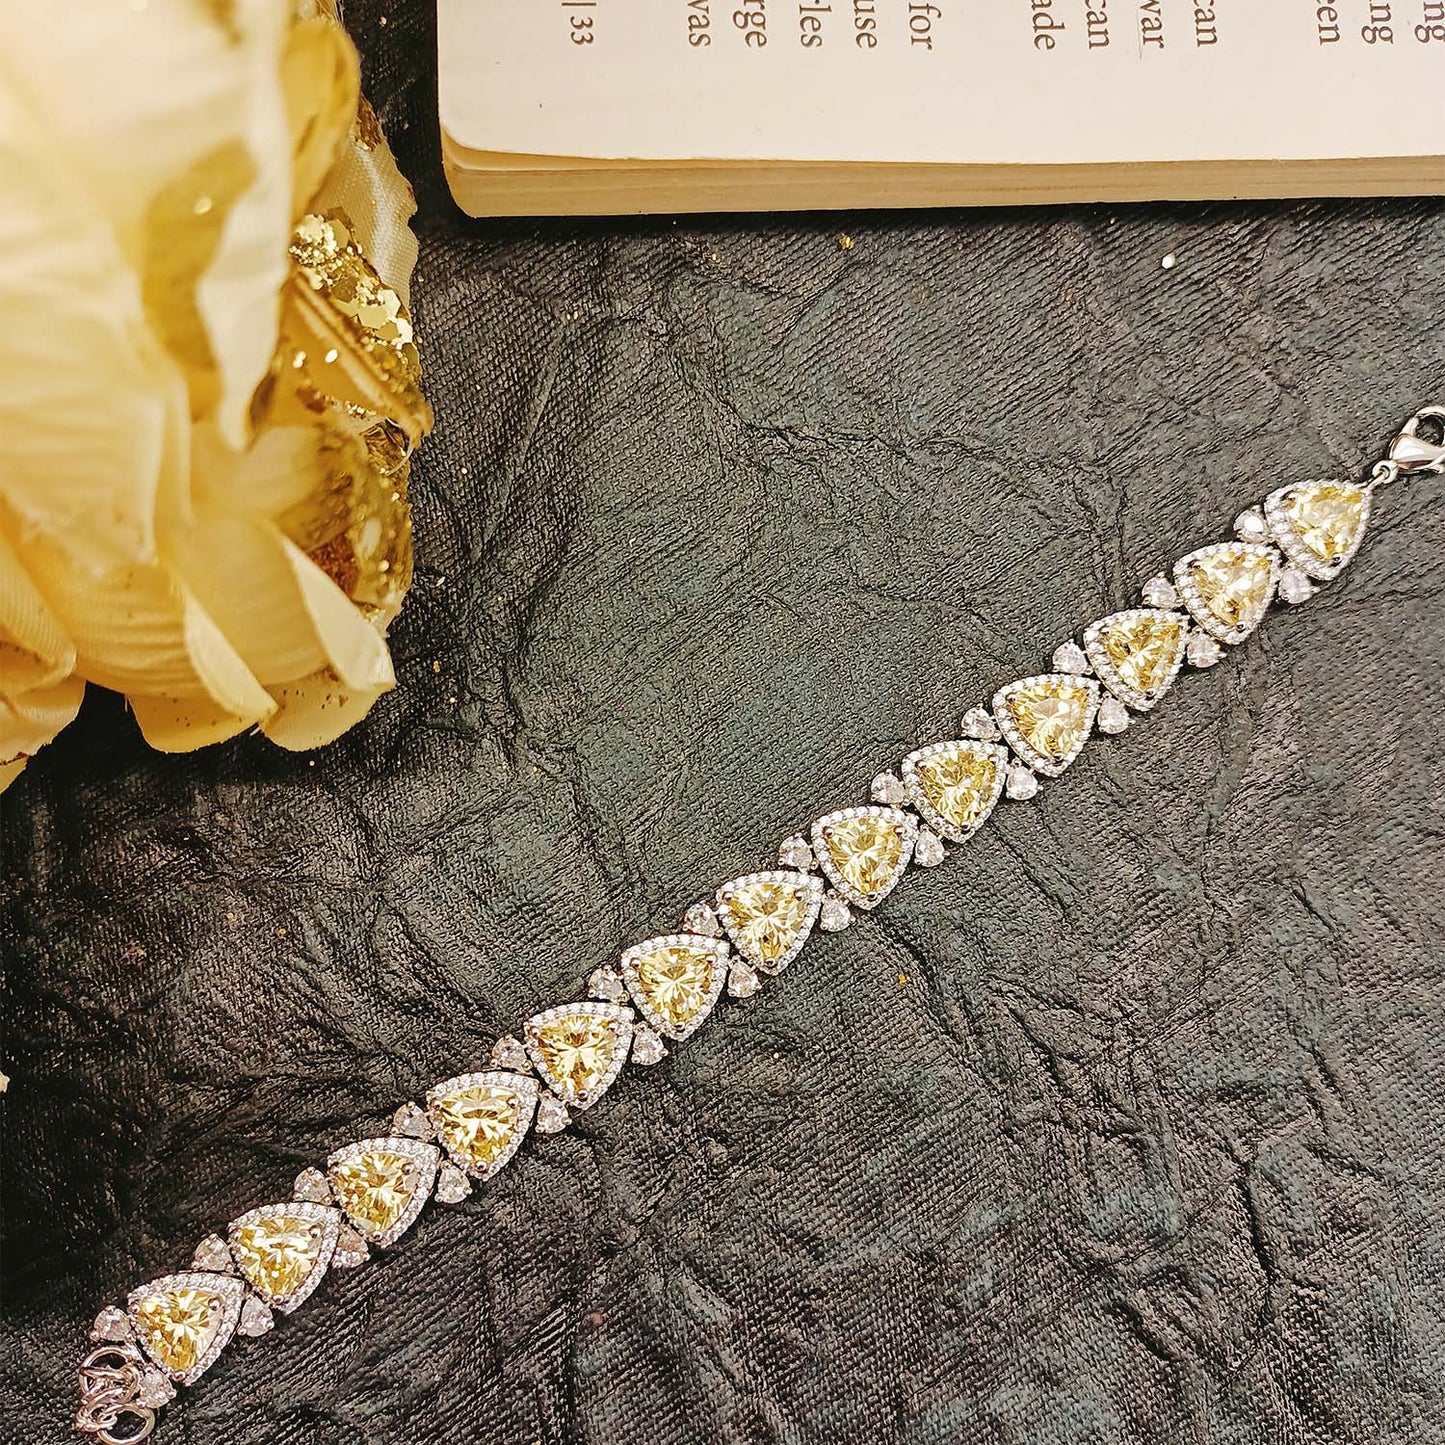 Venisha American Diamonds Flexible Bracelet Design With Coloured Yellow Stones